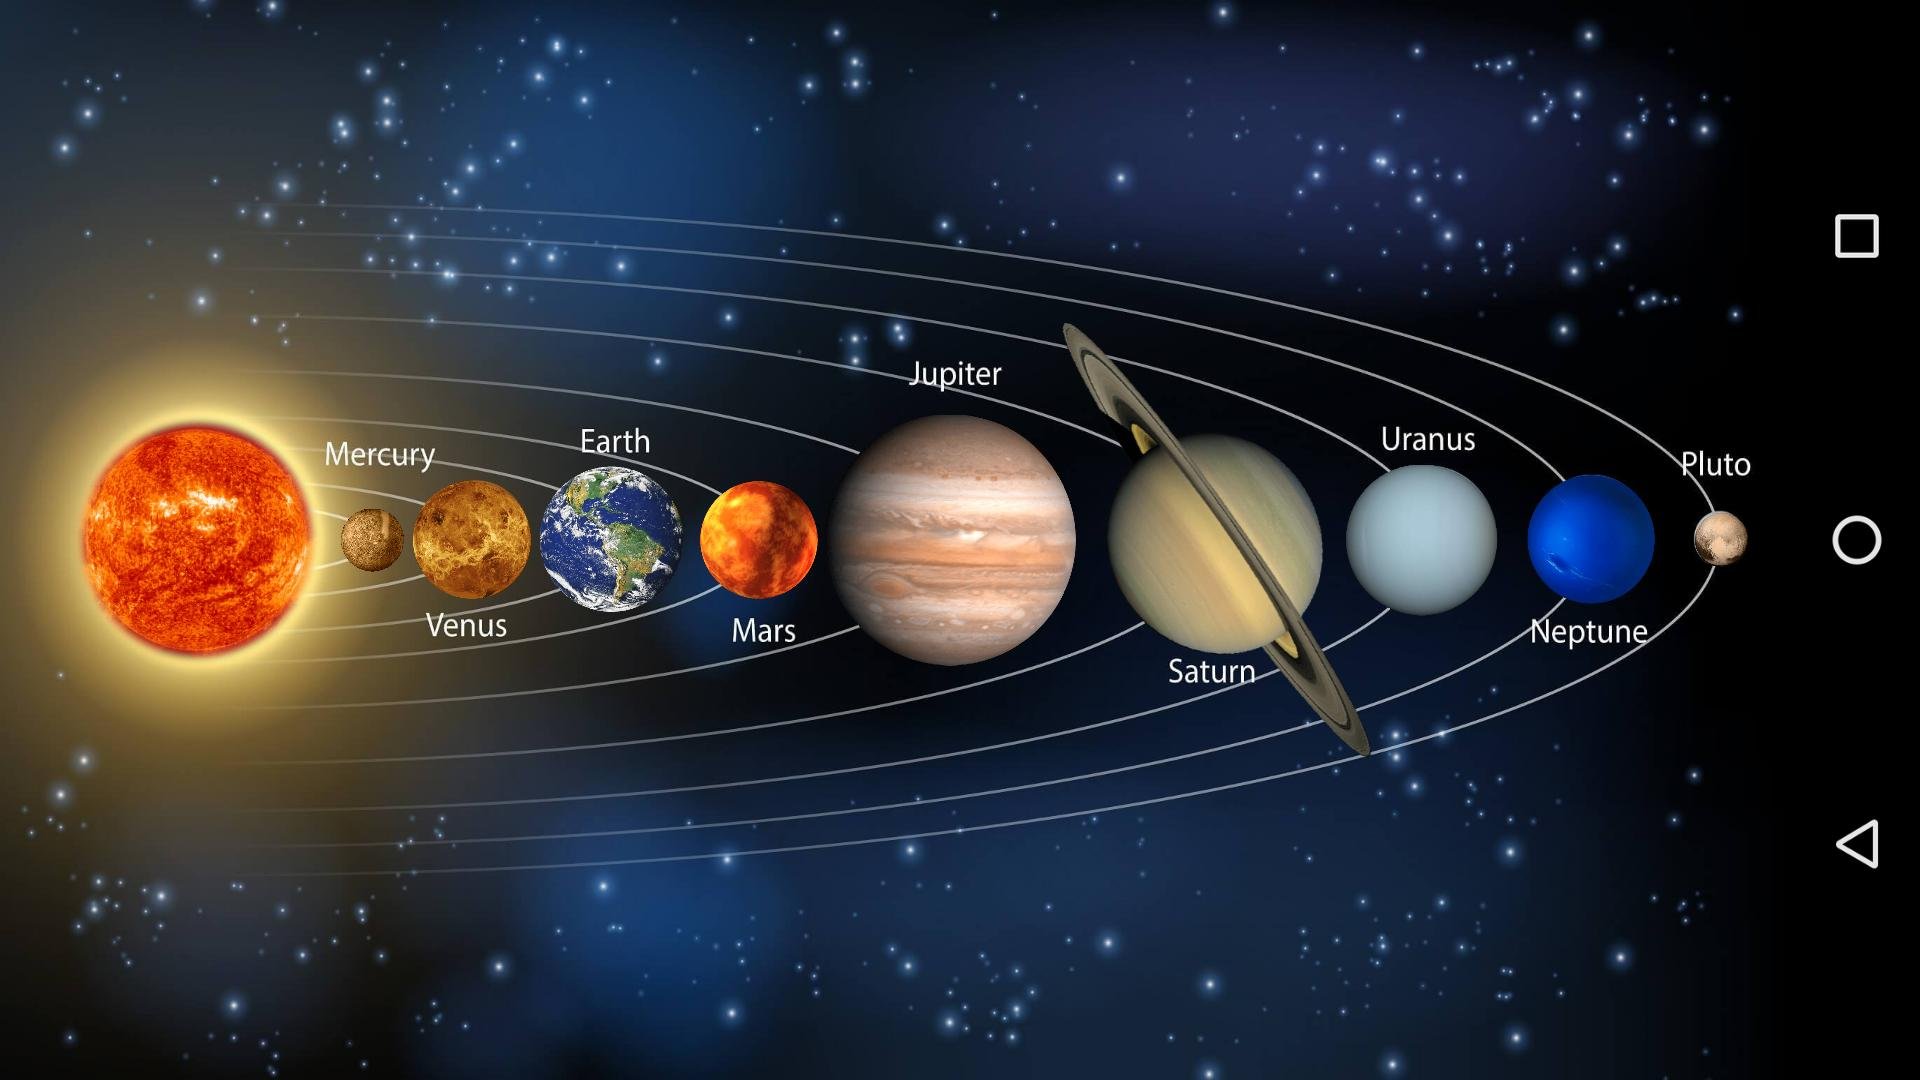 Планеты солнечной системы по порядку от солнца с названиями фото для детей рисунки